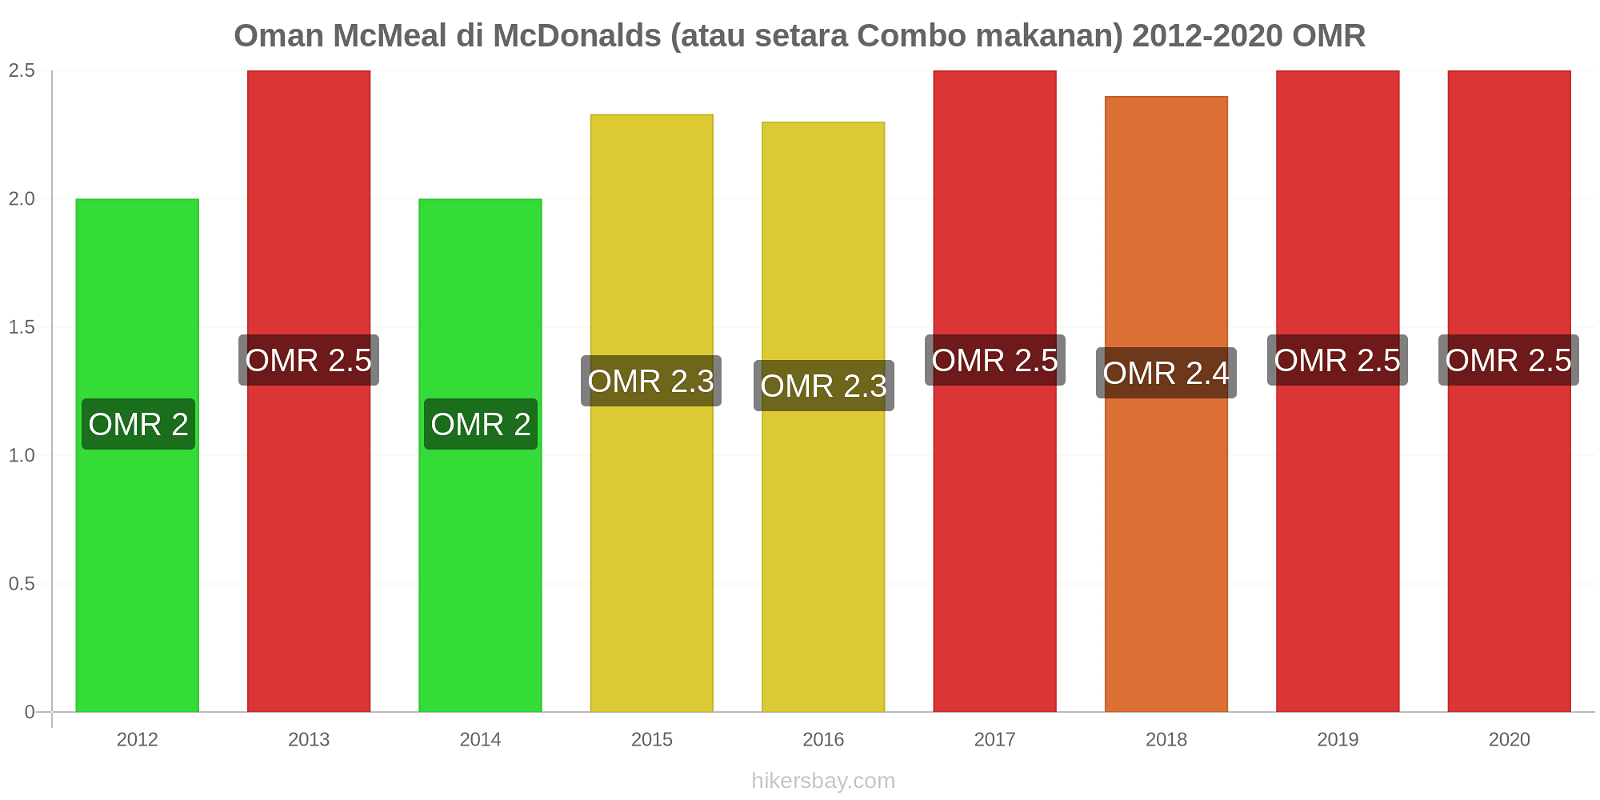 Oman perubahan harga McMeal di McDonalds (atau setara Combo makanan) hikersbay.com